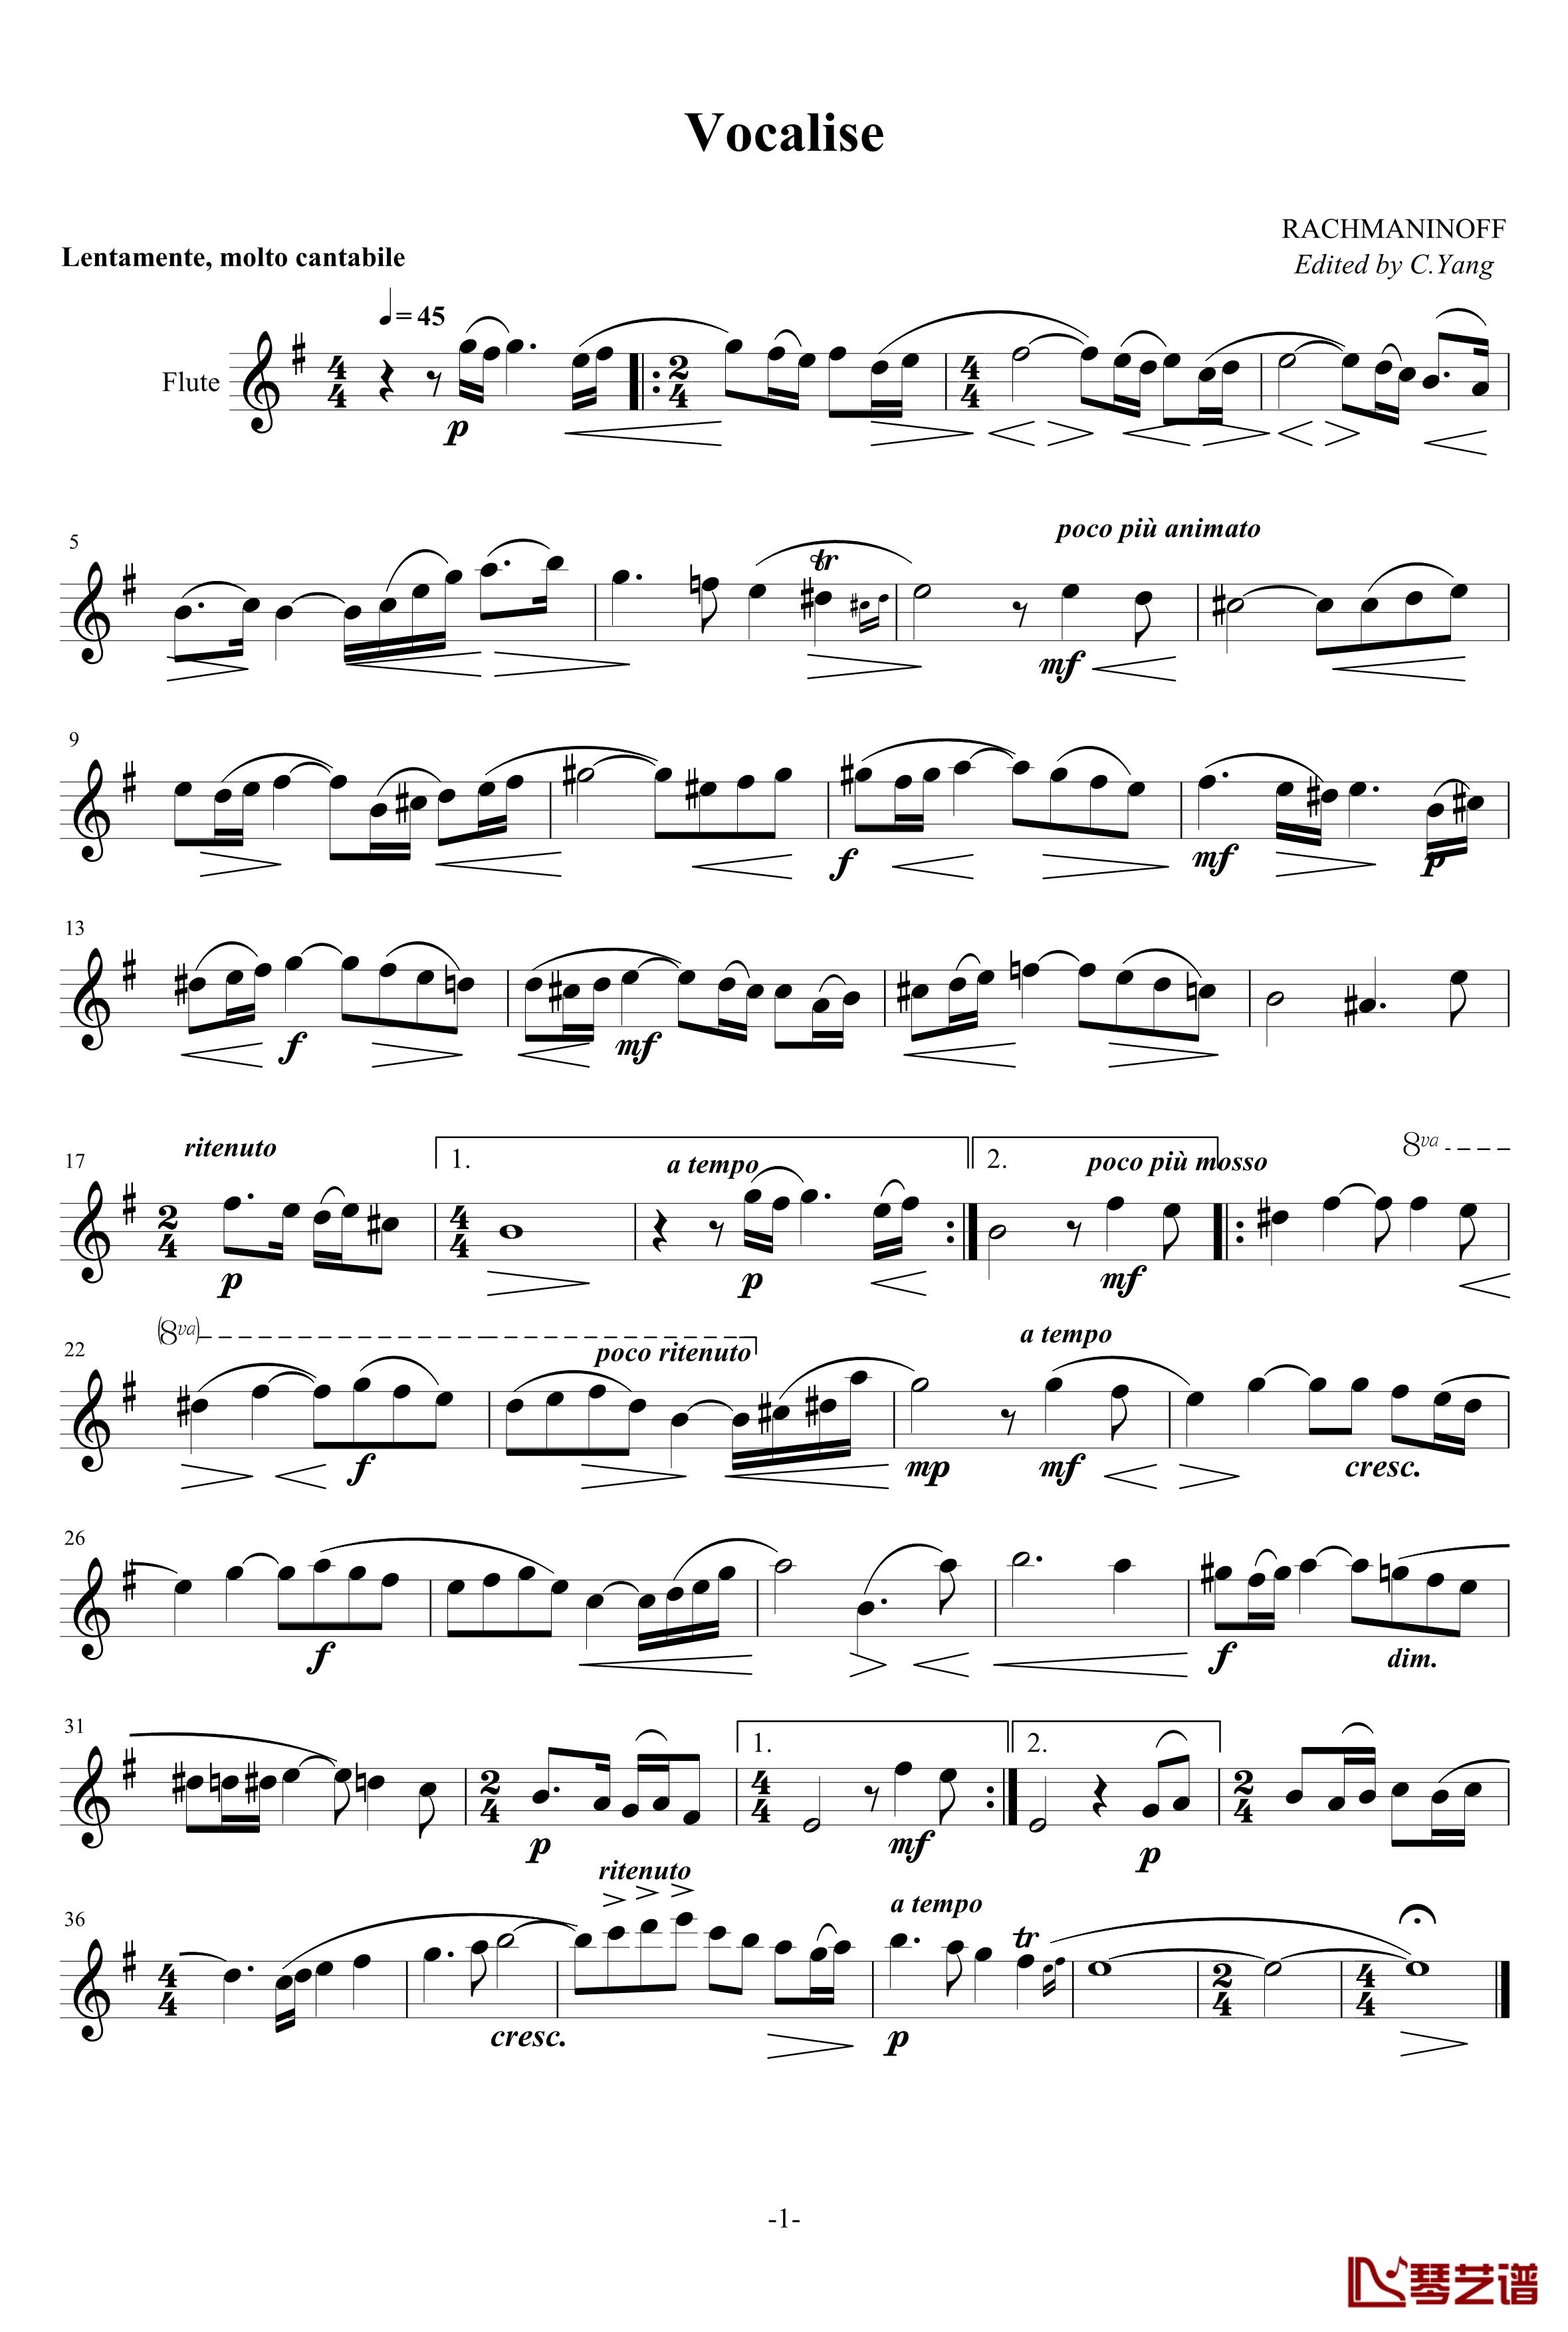 练声曲钢琴谱-长笛-拉赫马尼若夫1